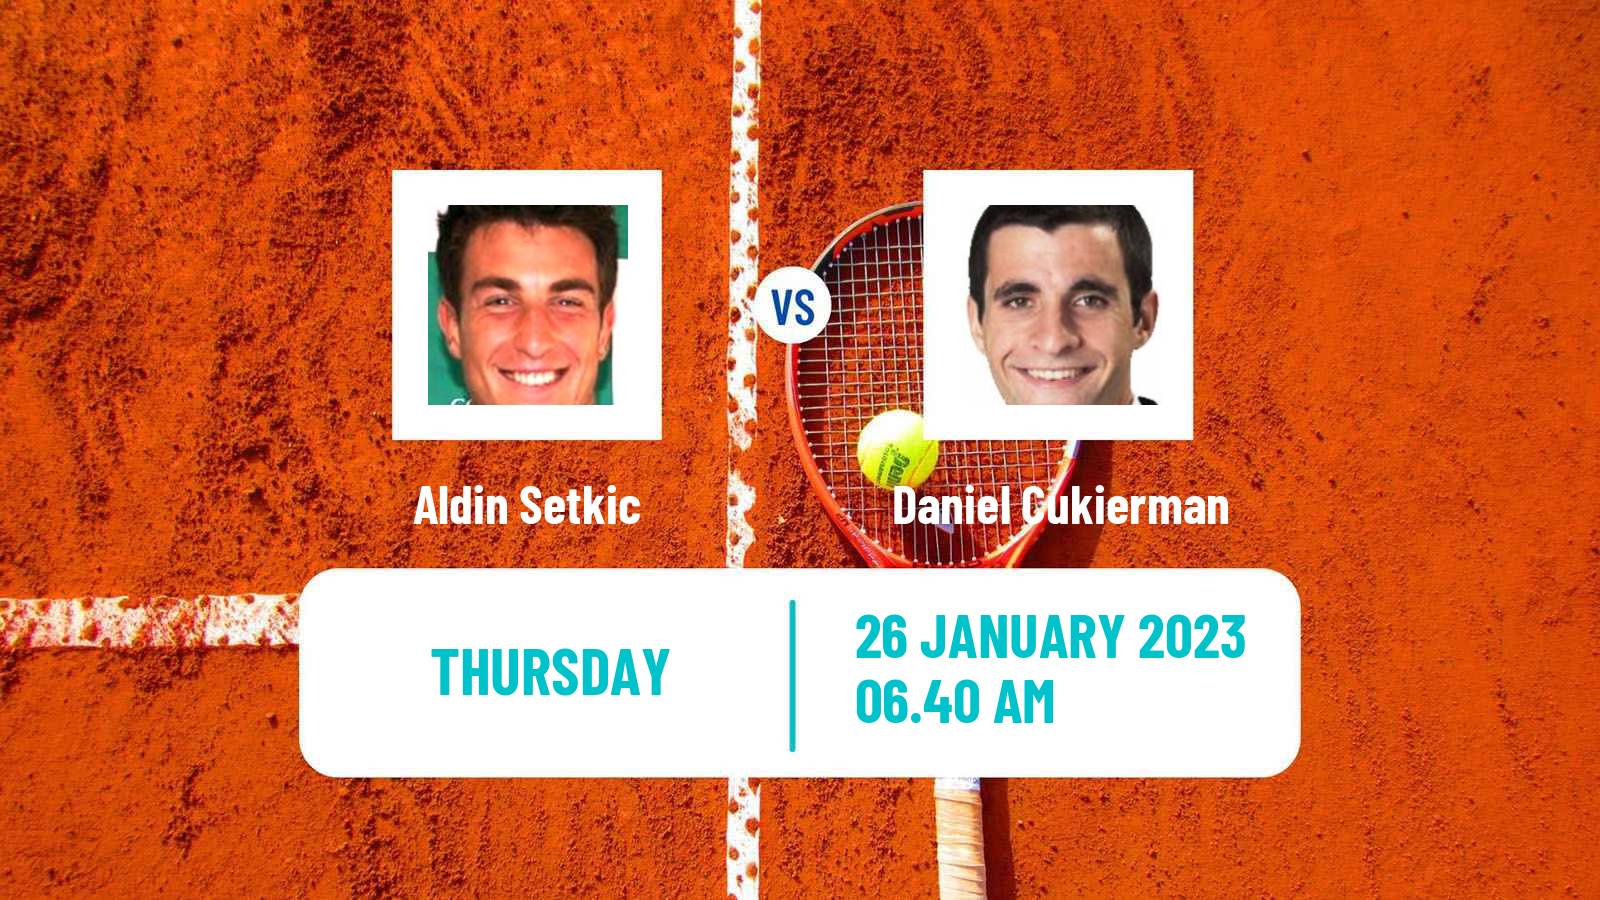 Tennis ITF Tournaments Aldin Setkic - Daniel Cukierman